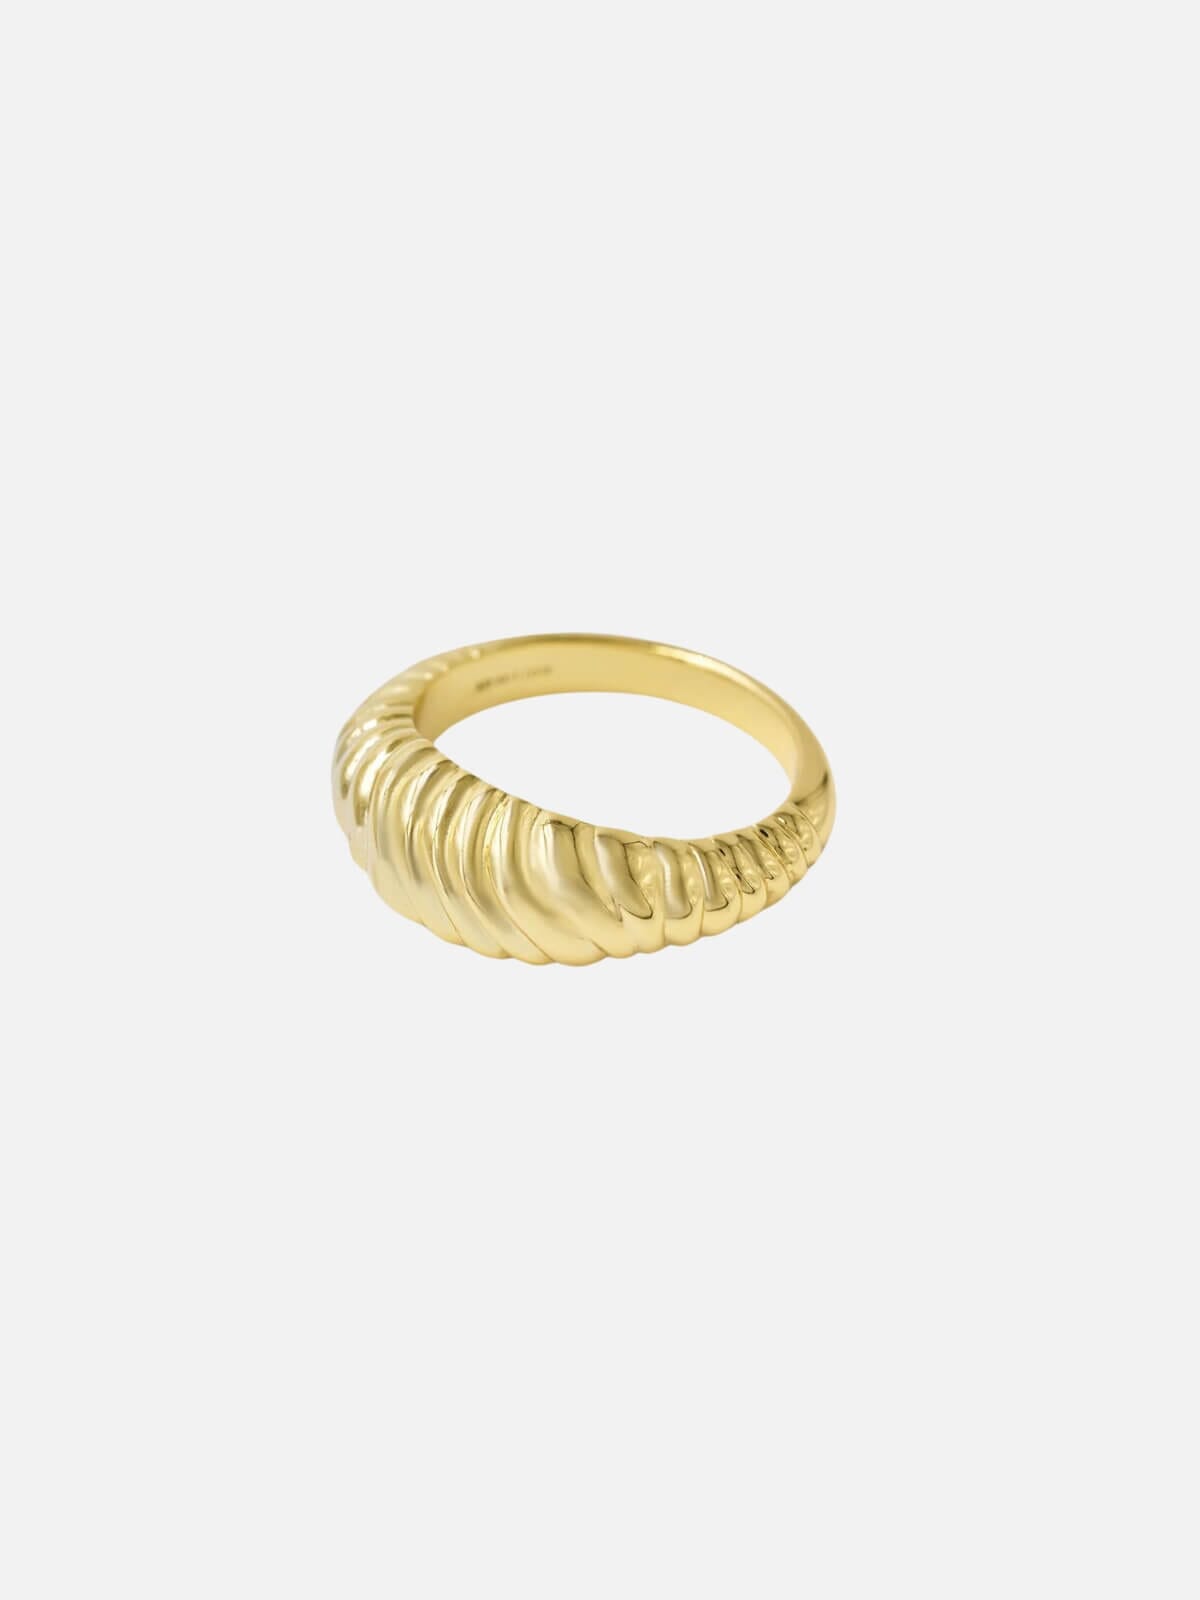 Brie Leon | Olar Ring - Gold | Perlu